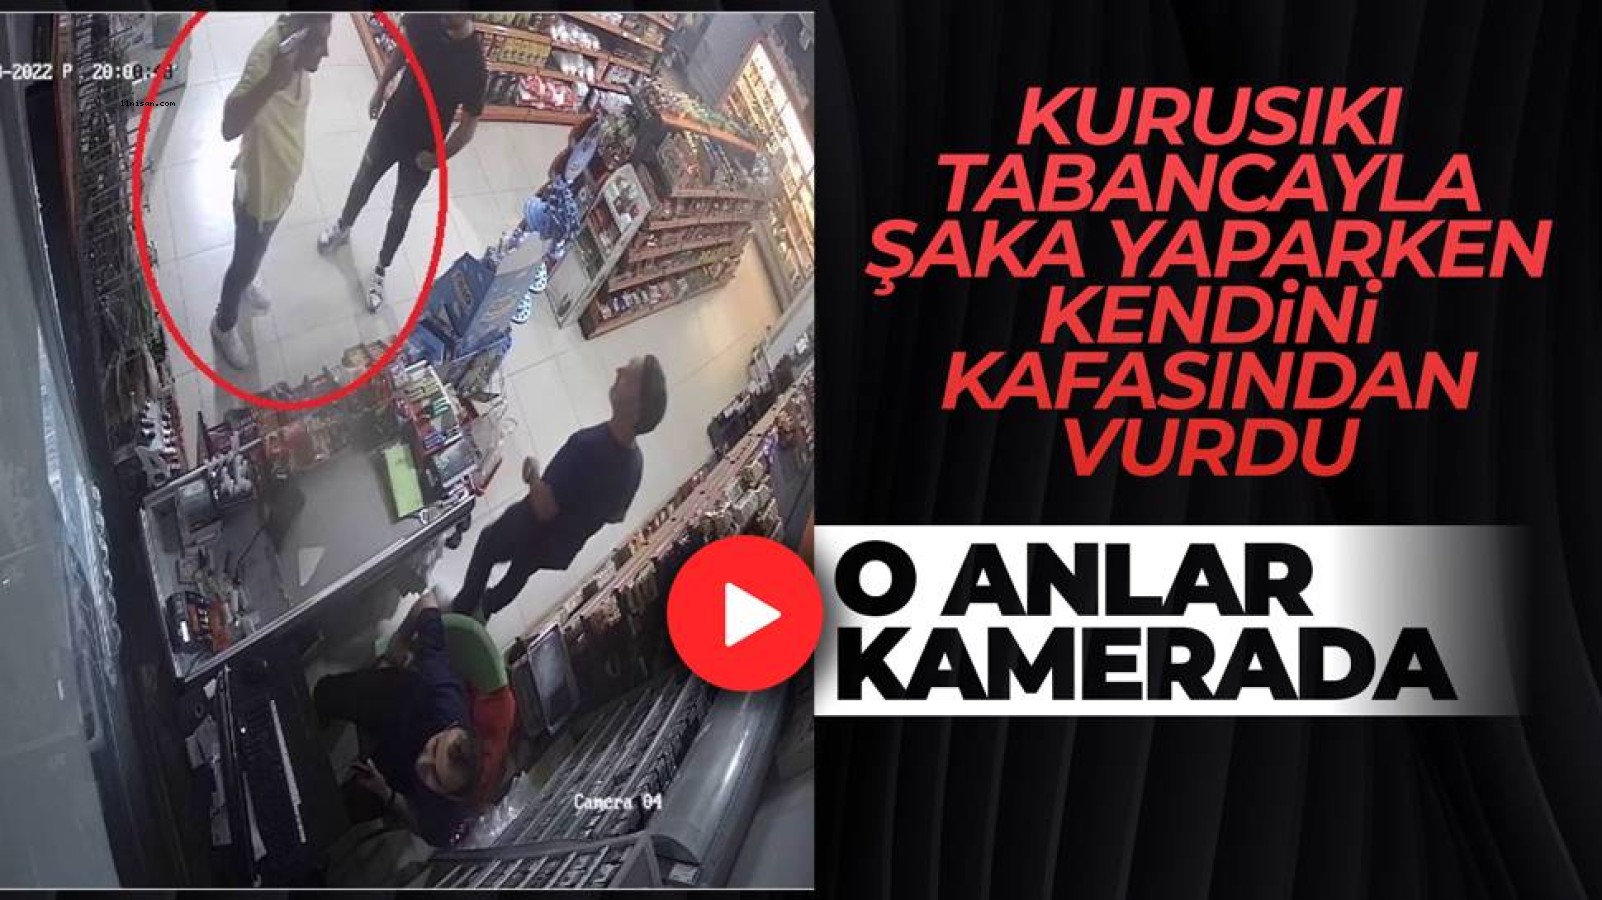 Samsun'da bir kişi şaka amaçlı başına dayadığı tabancayla kendini yaraladı